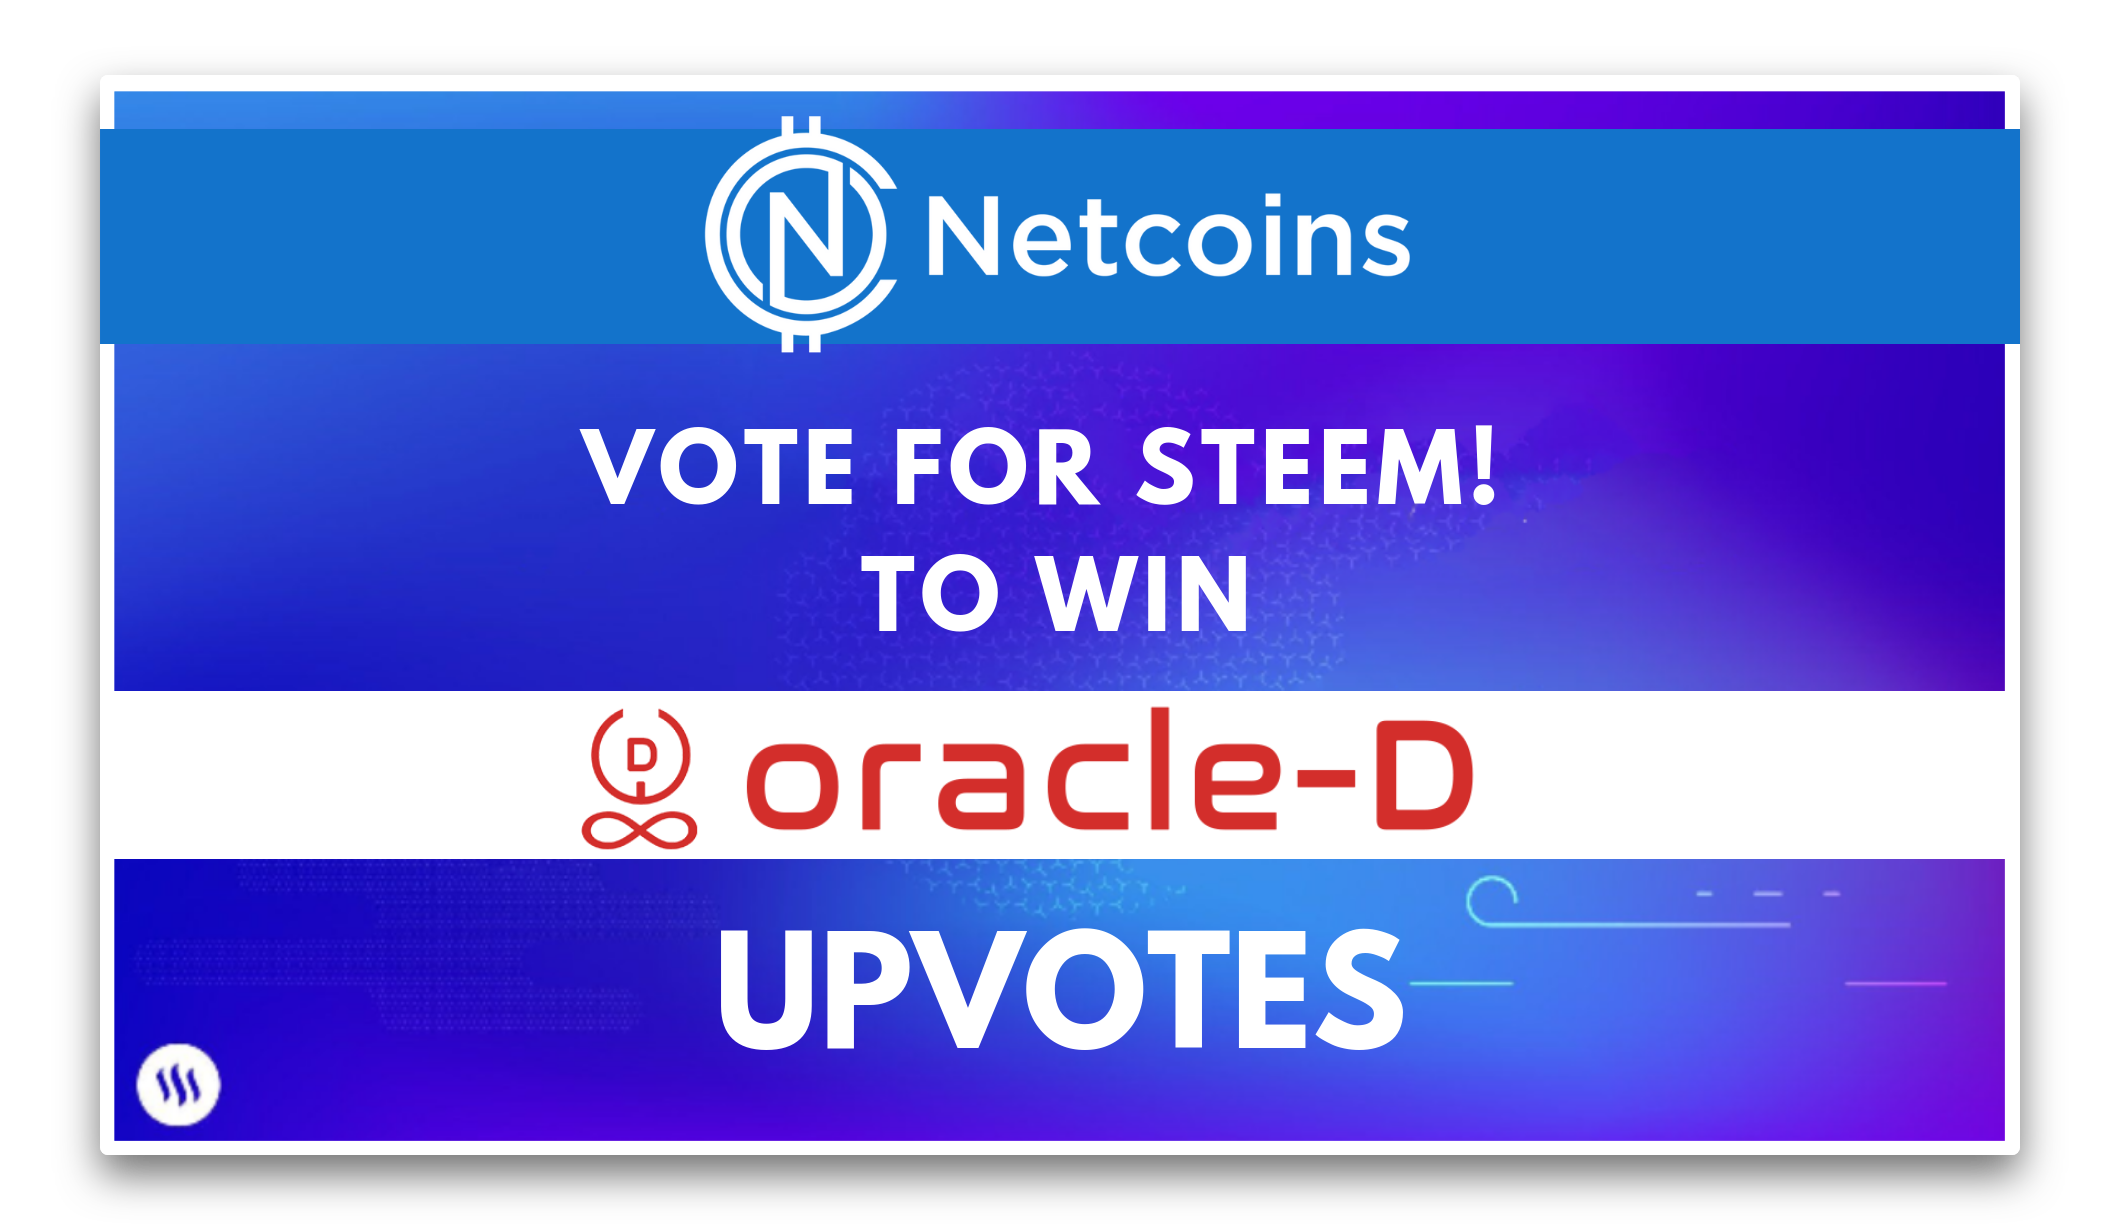 请为STEEM投票，让STEEM上NETCoins 并且得到 Oracle-D 的点赞（竞赛）